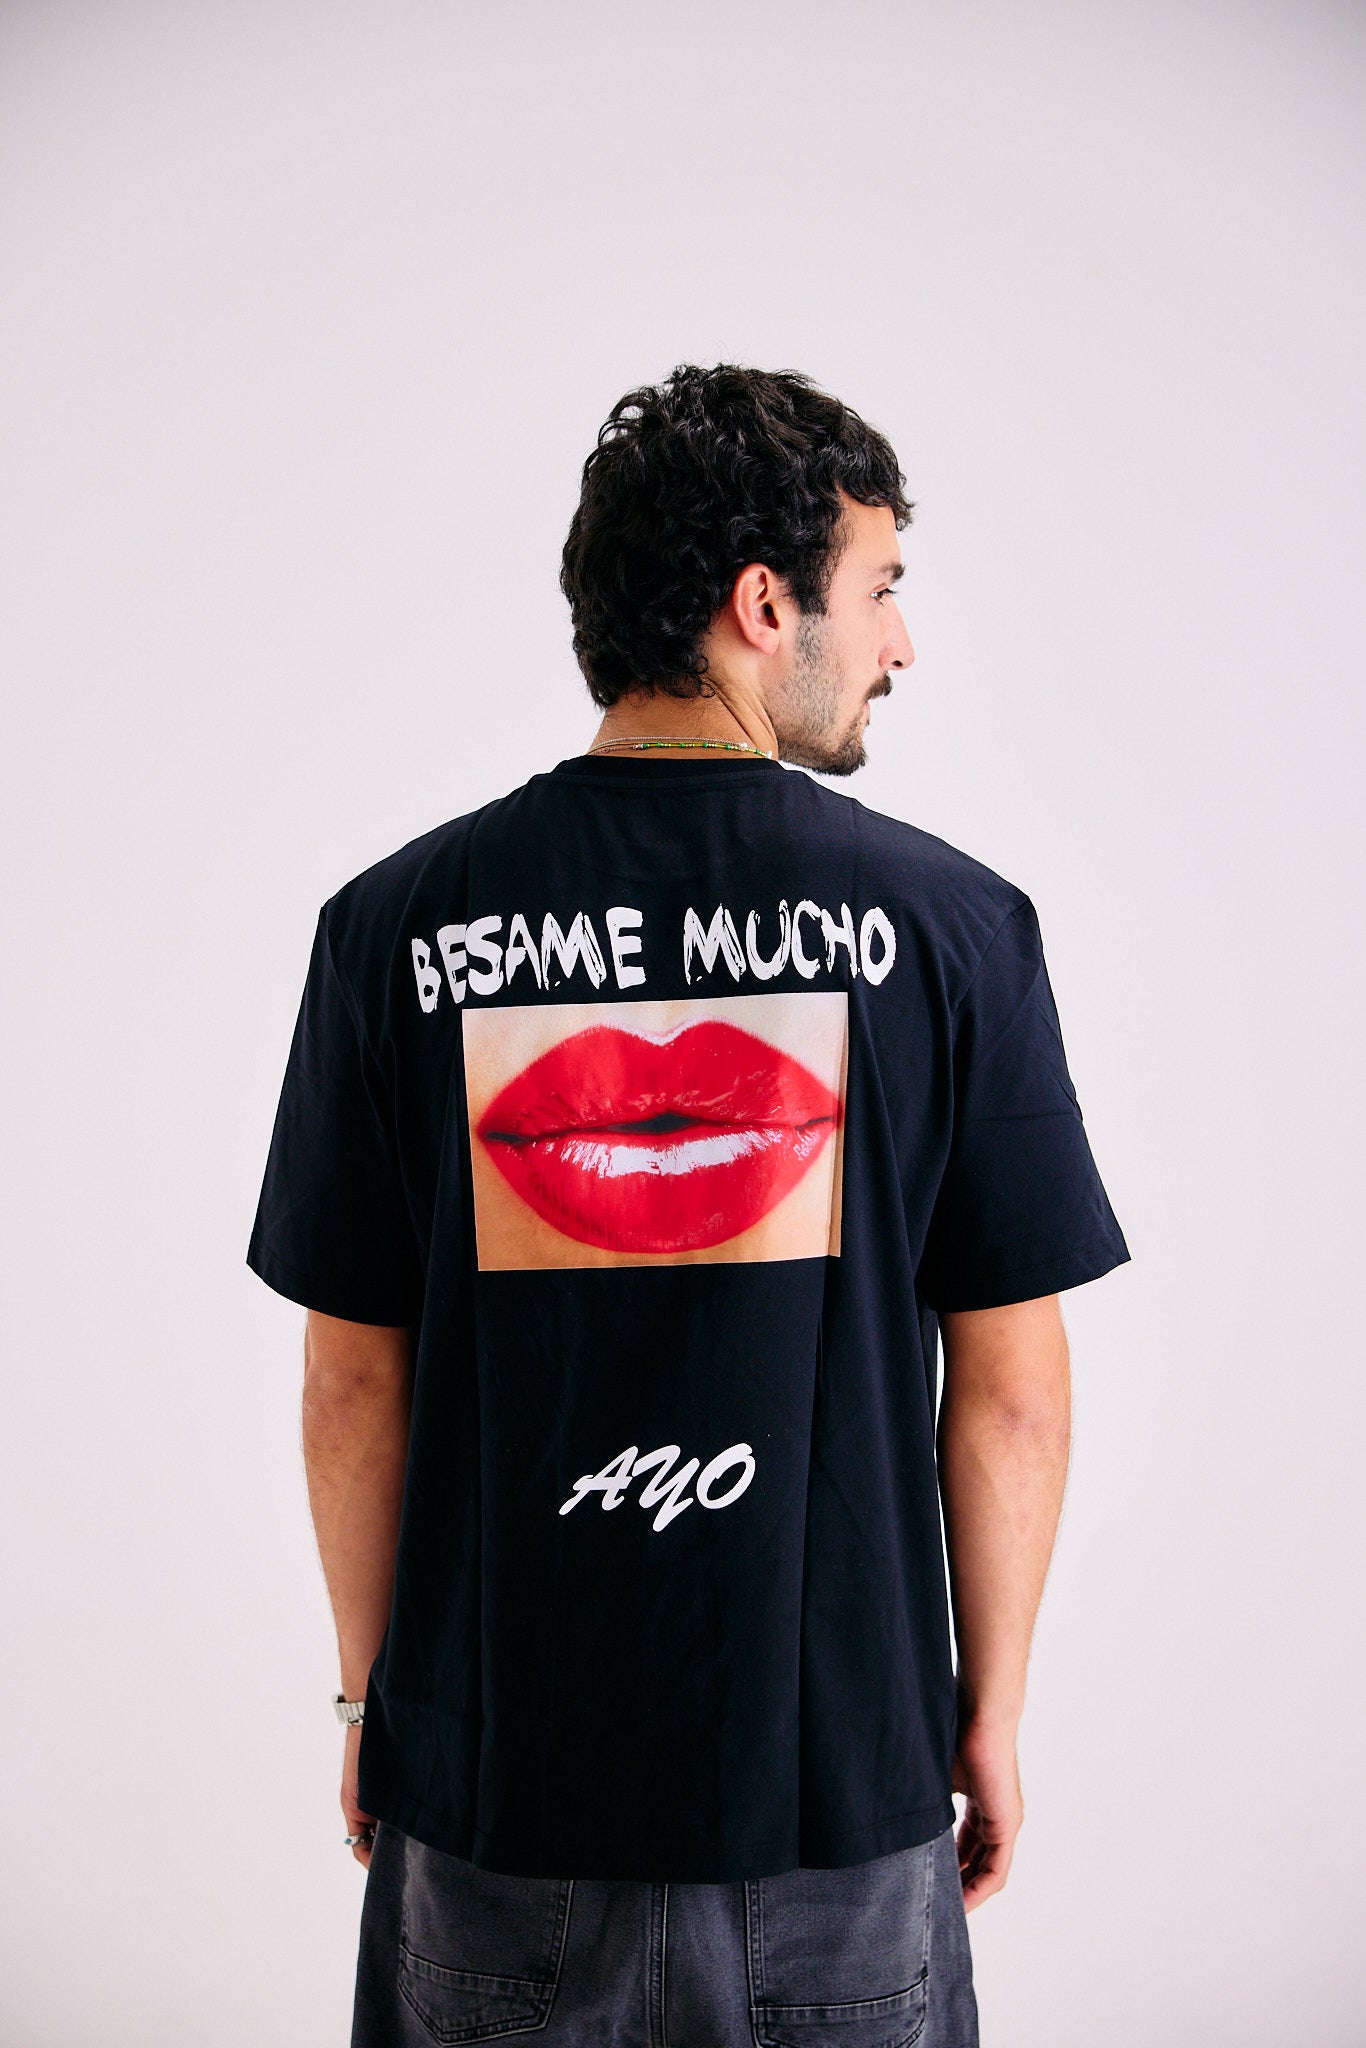 Besame Mucho T-shirt